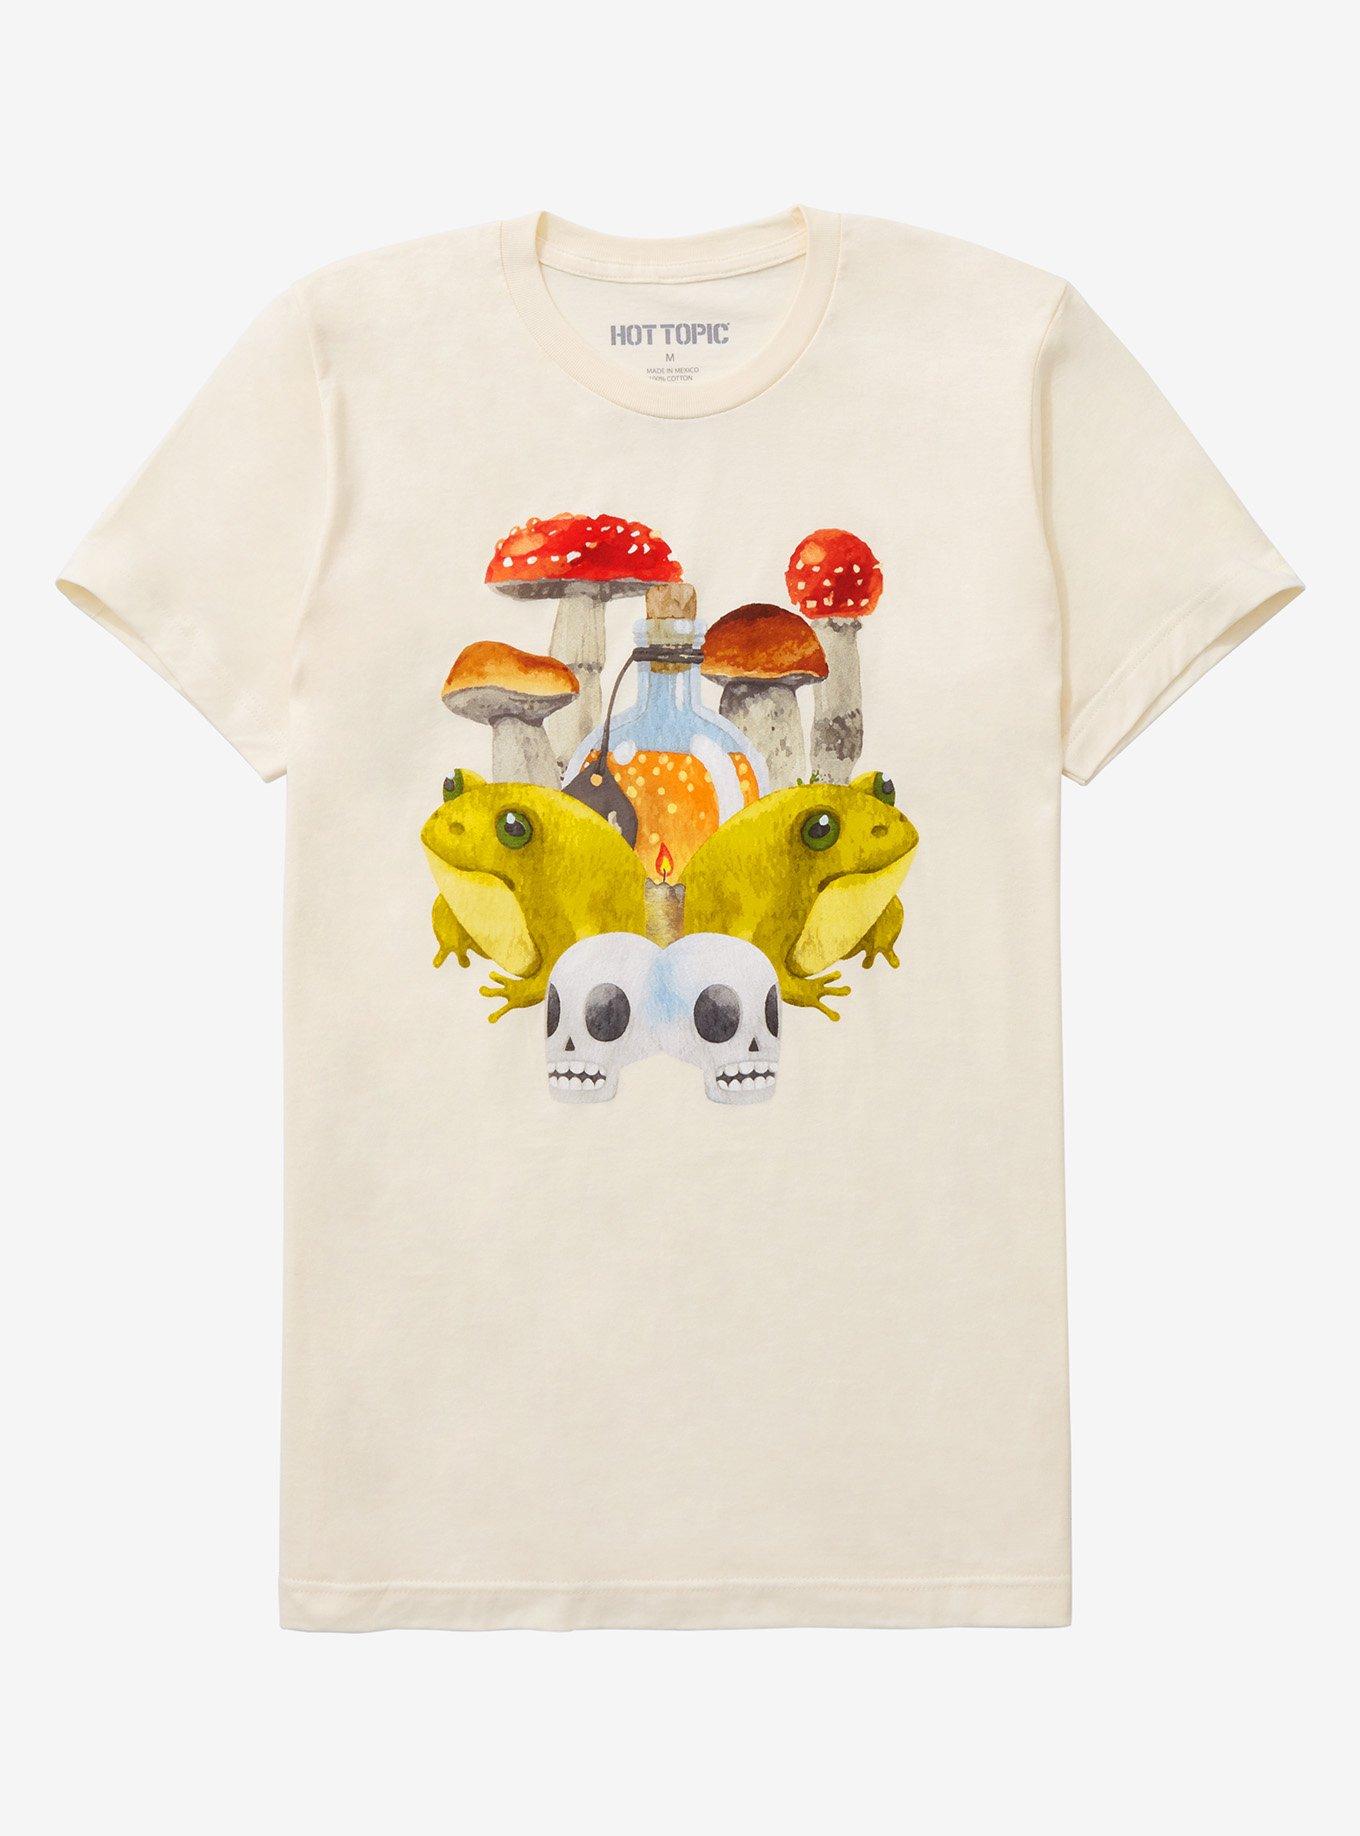 Mushroom & Toad T-Shirt, TAN/BEIGE, hi-res